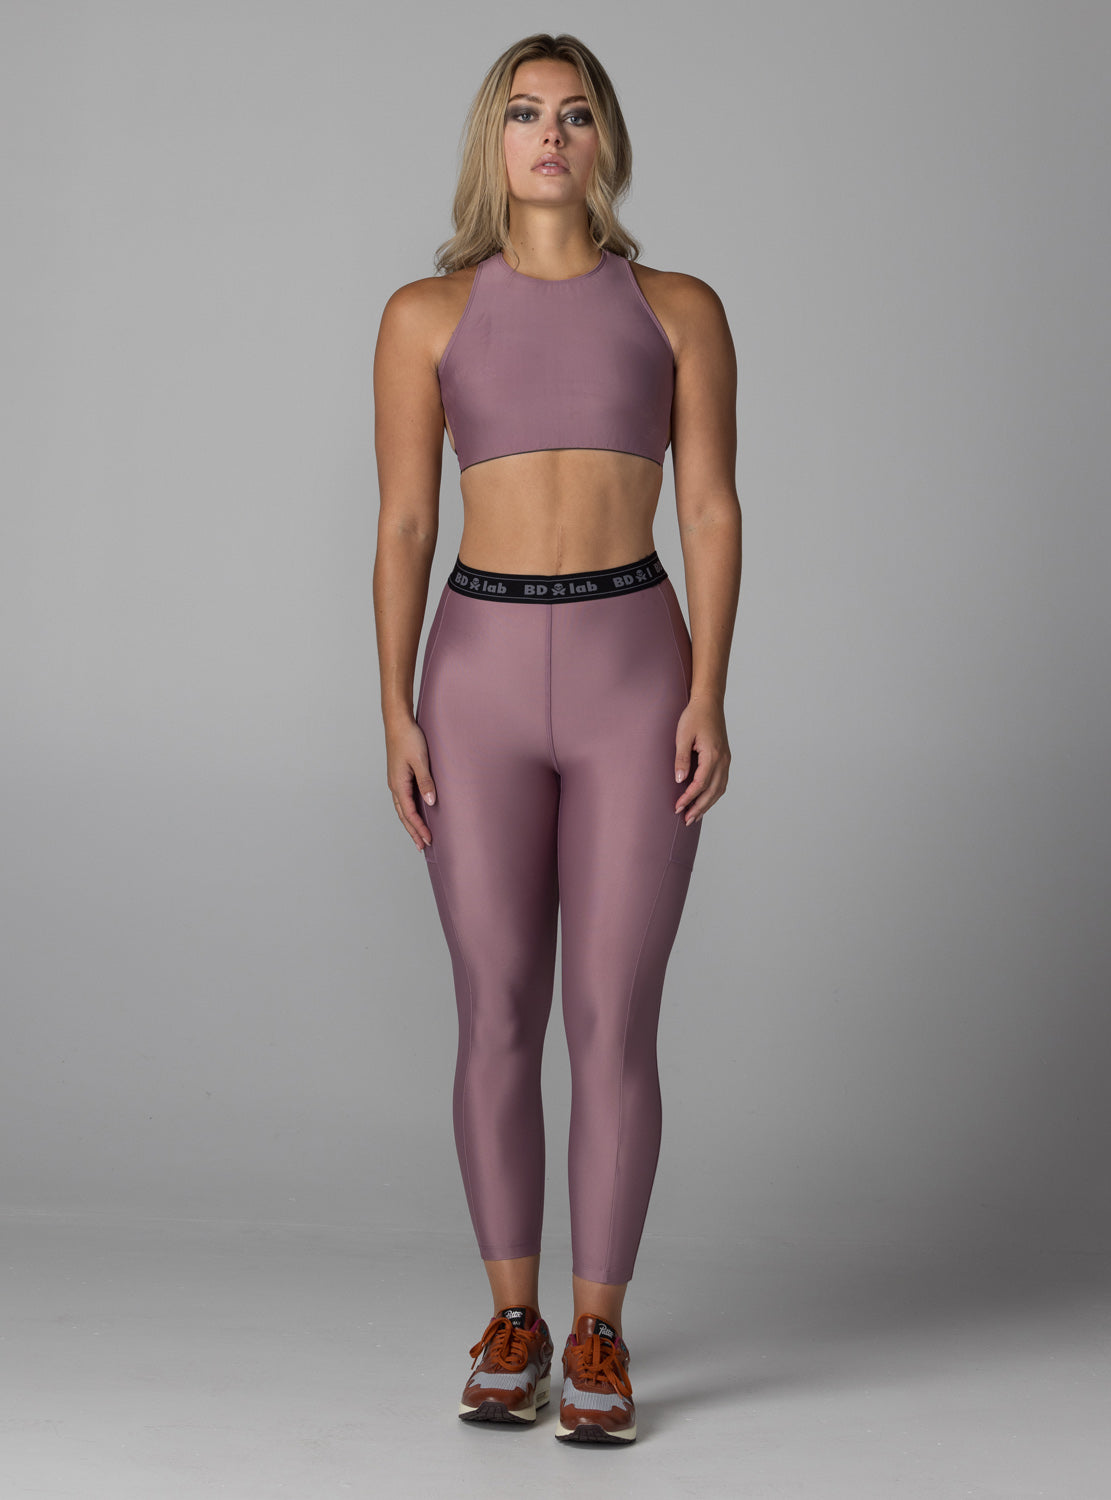 betty designs BDlab sportswear apparel for women legging